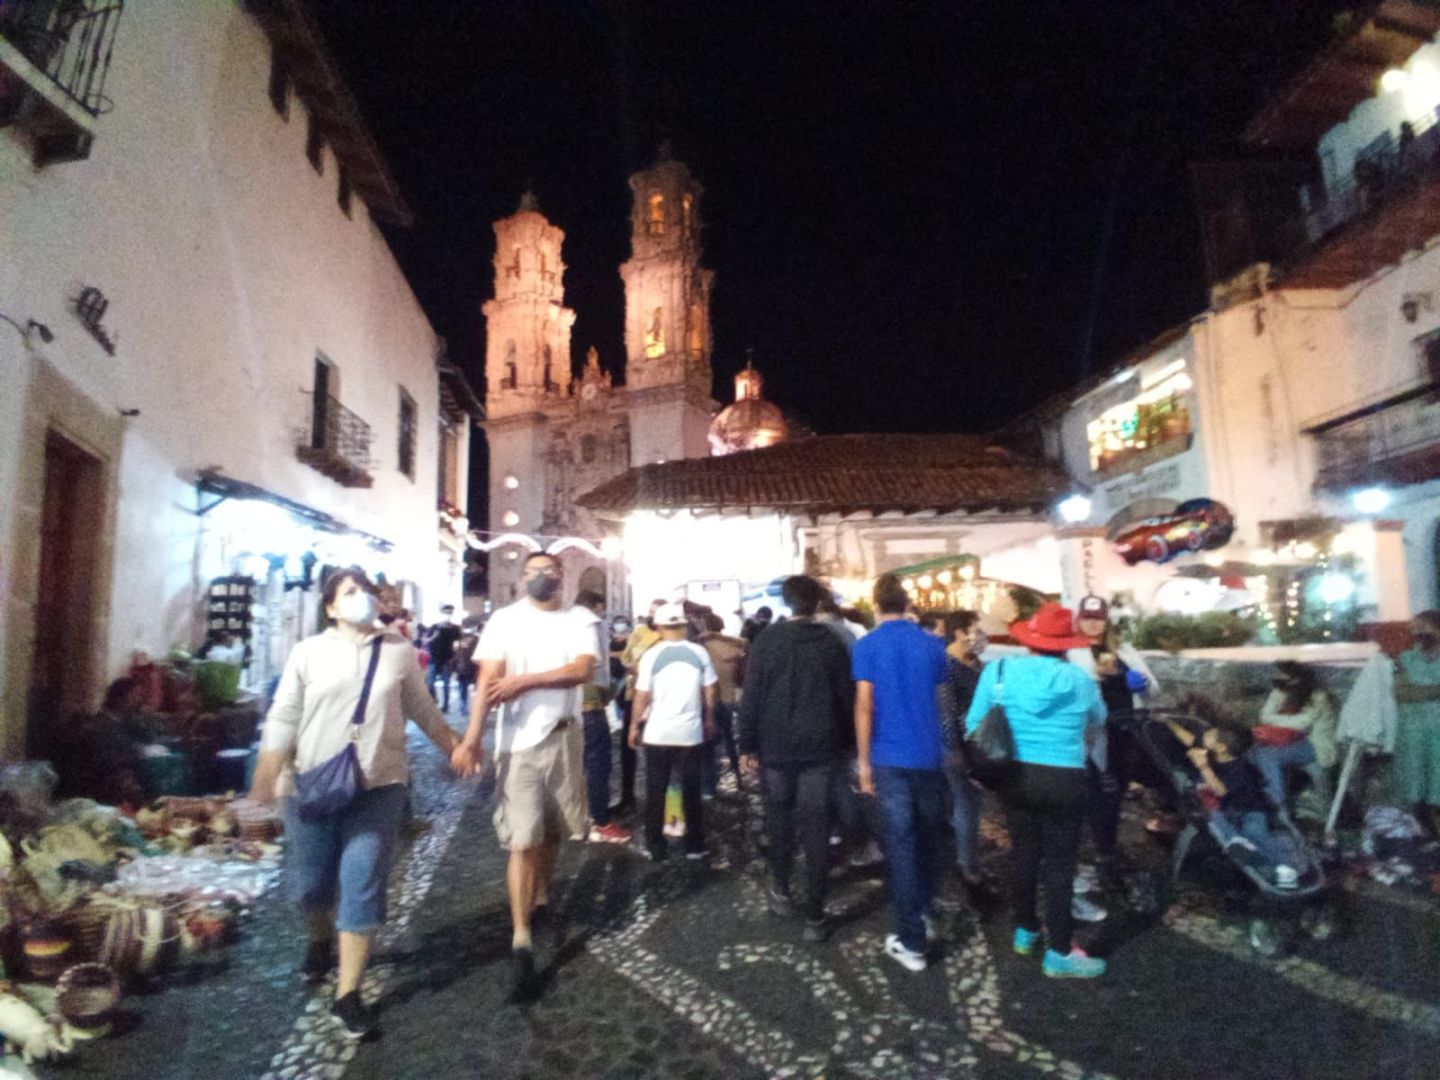 Destinos turísticos de Guerrero  mantuvieron aforos permitidos en la ocupación hotelera por Covid-19